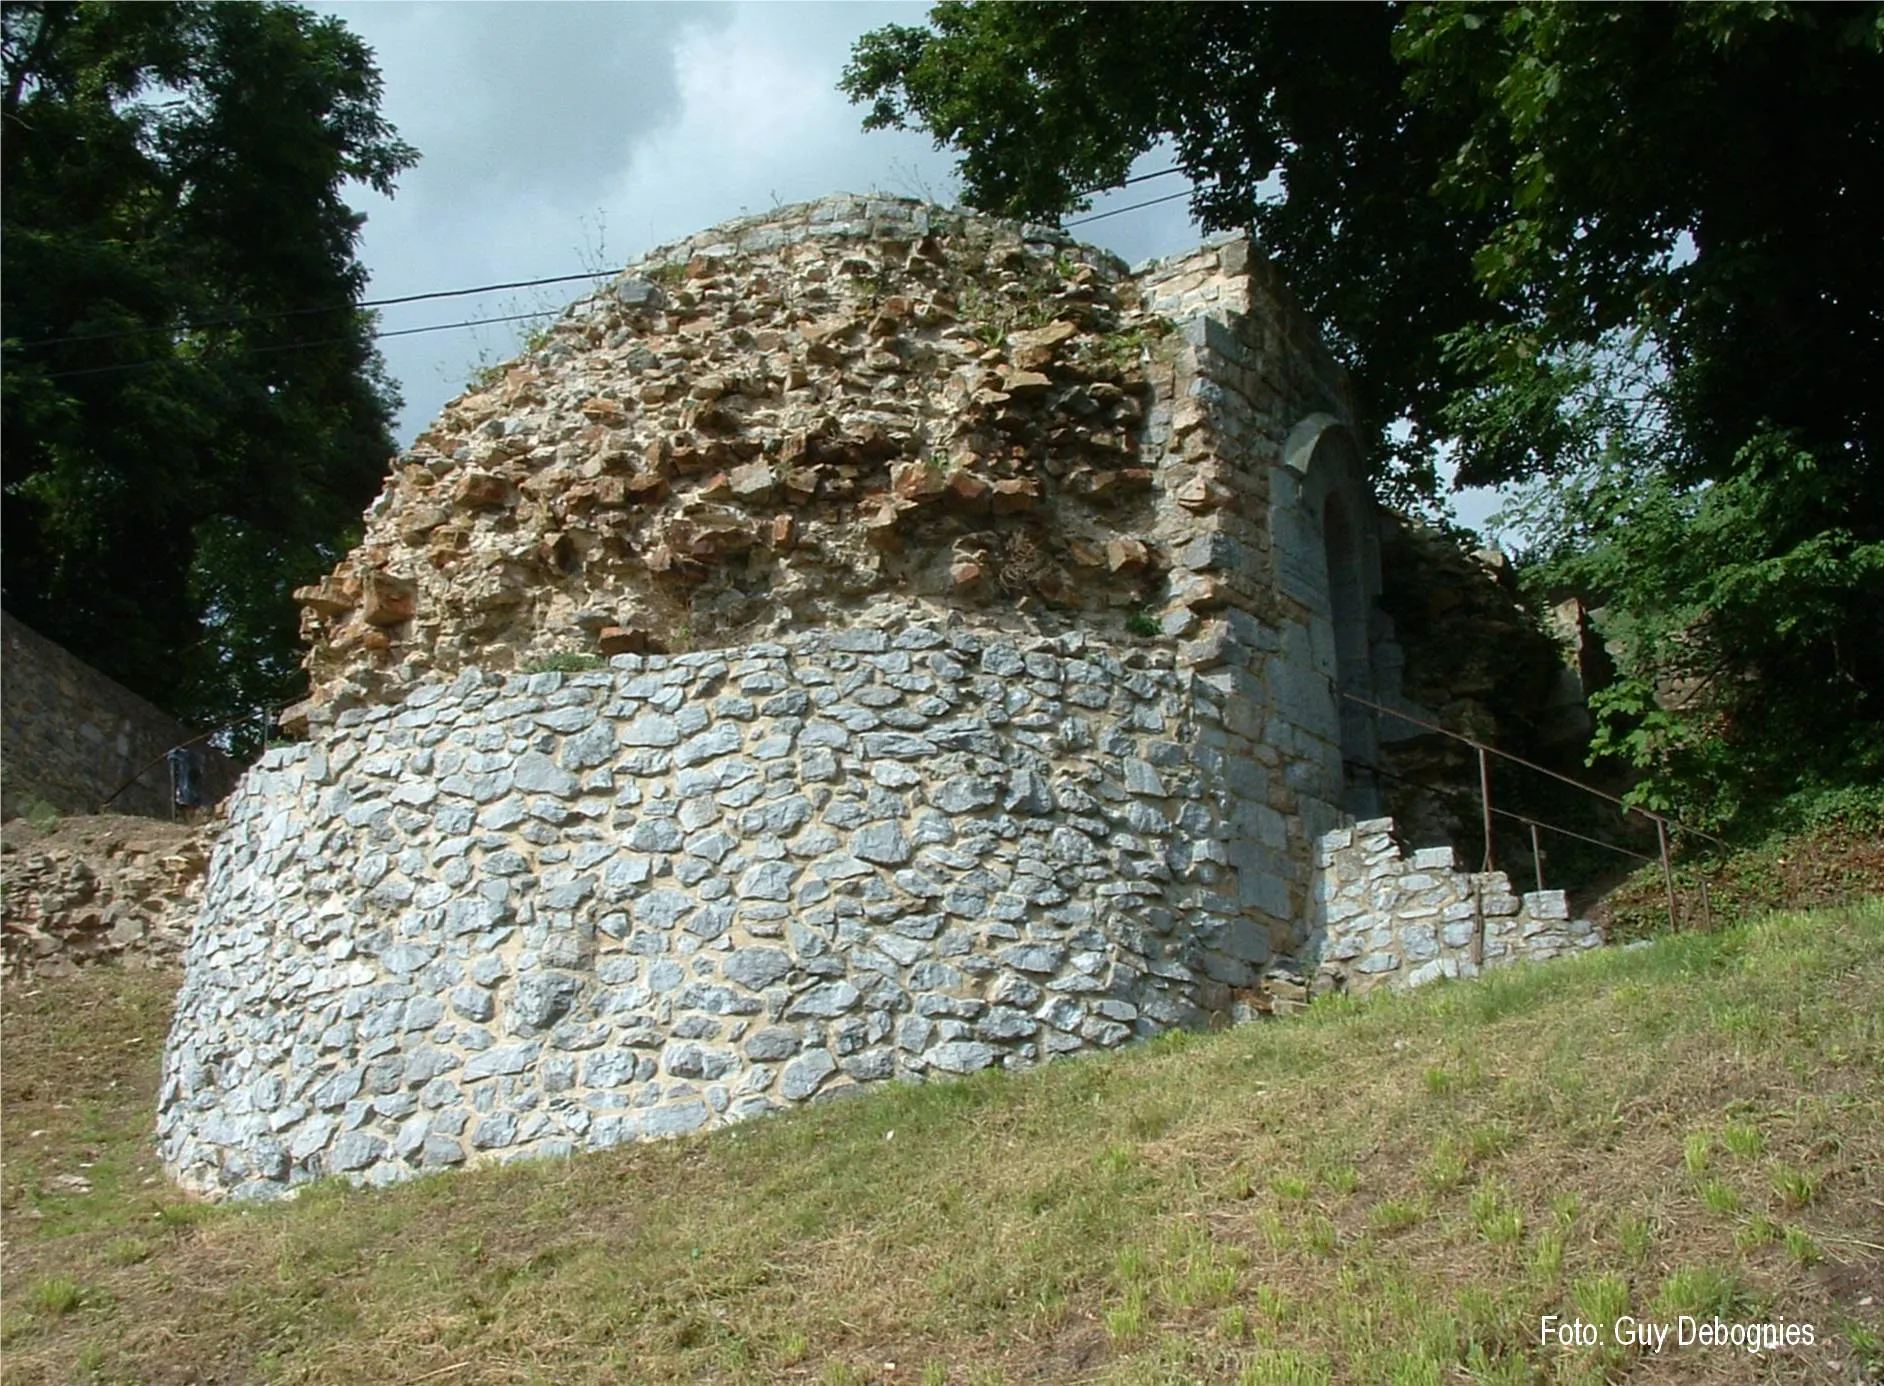 Photo showing: De zgn. Poterne, onderdeel van de middeleeuwse stadsmuren van Beaumont.

07/08/05